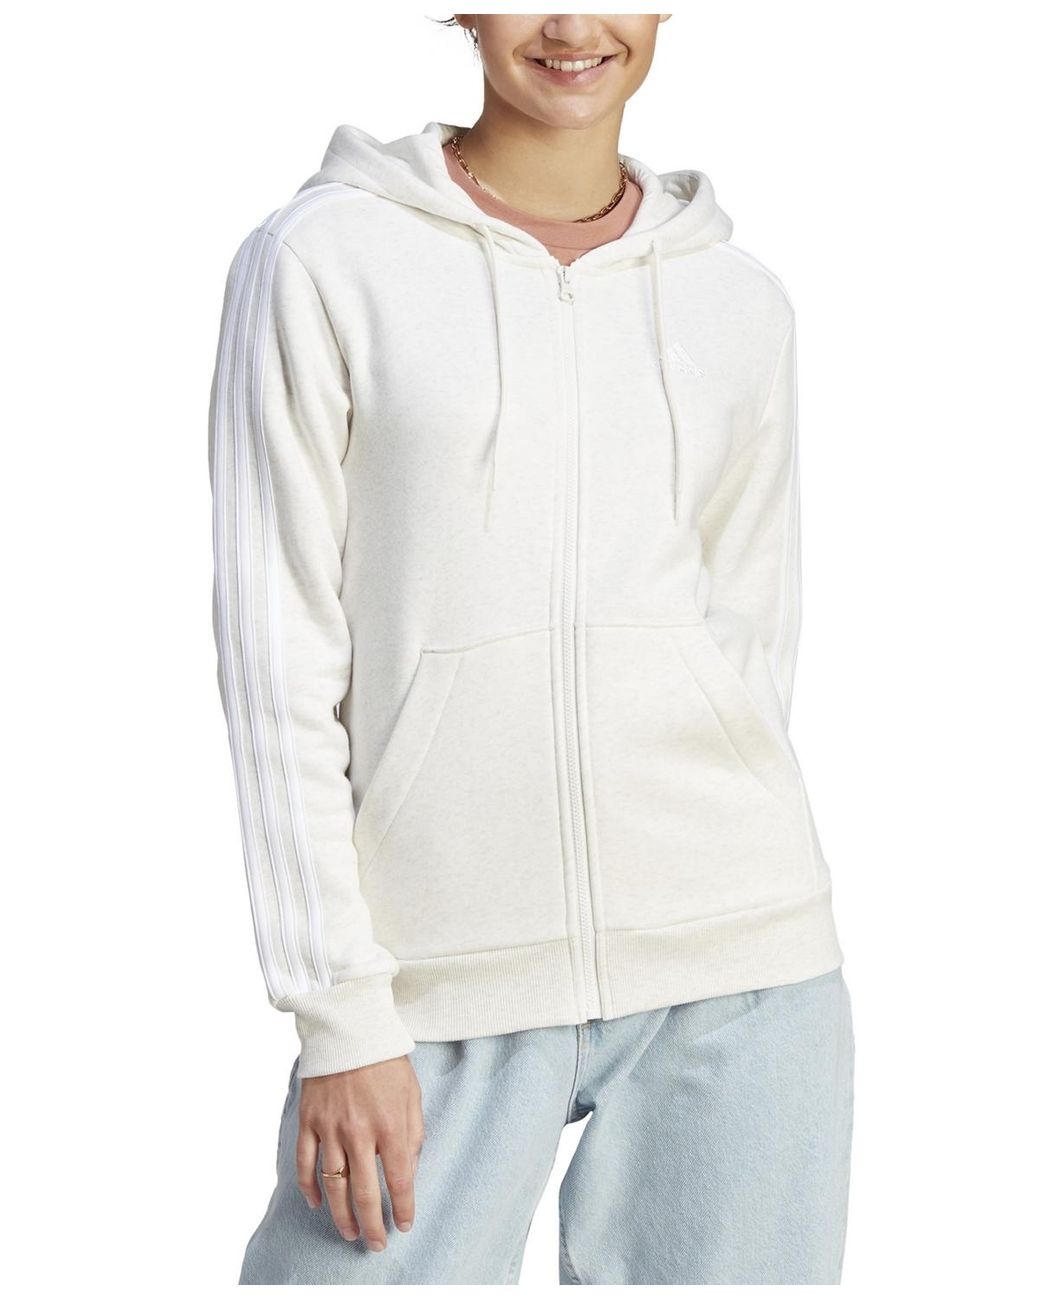 Women's 3-Stripe Cotton Fleece Full-Zip Hoodie Sweatshirt